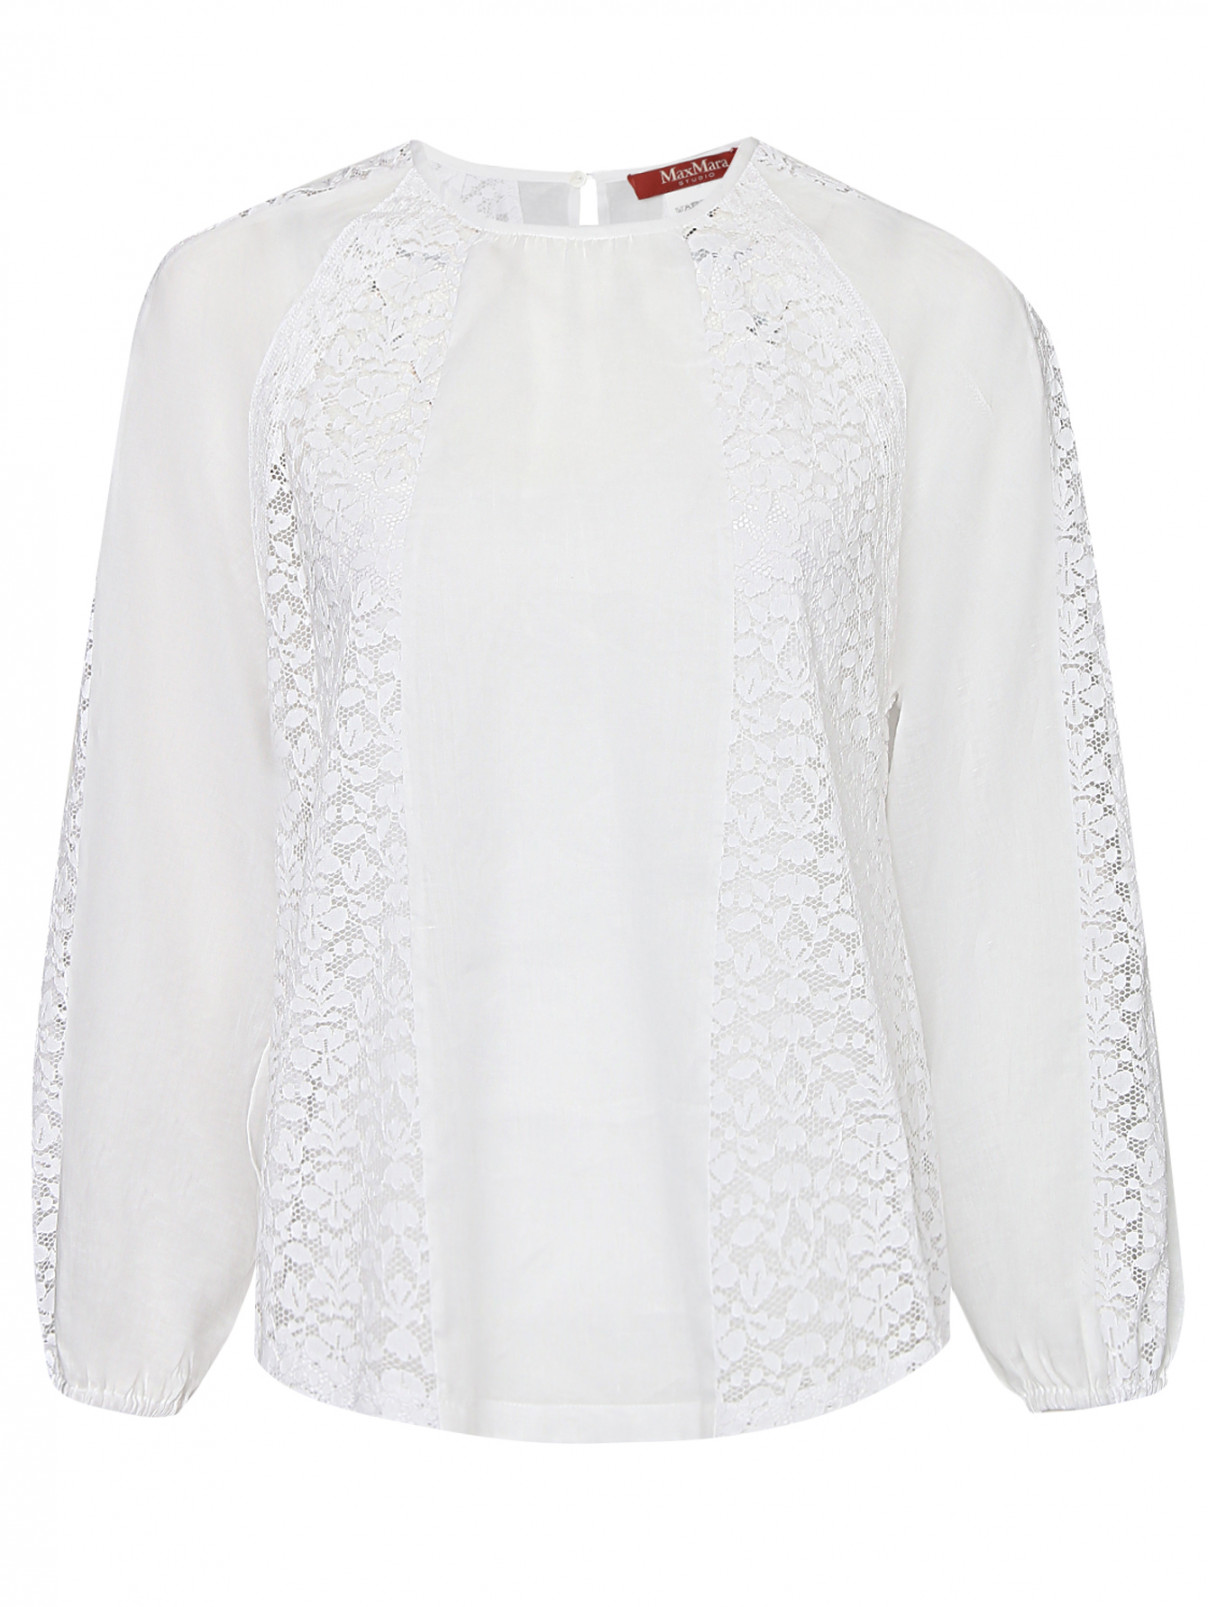 Блуза свободного кроя с кружевной отделкой Max Mara  –  Общий вид  – Цвет:  Белый